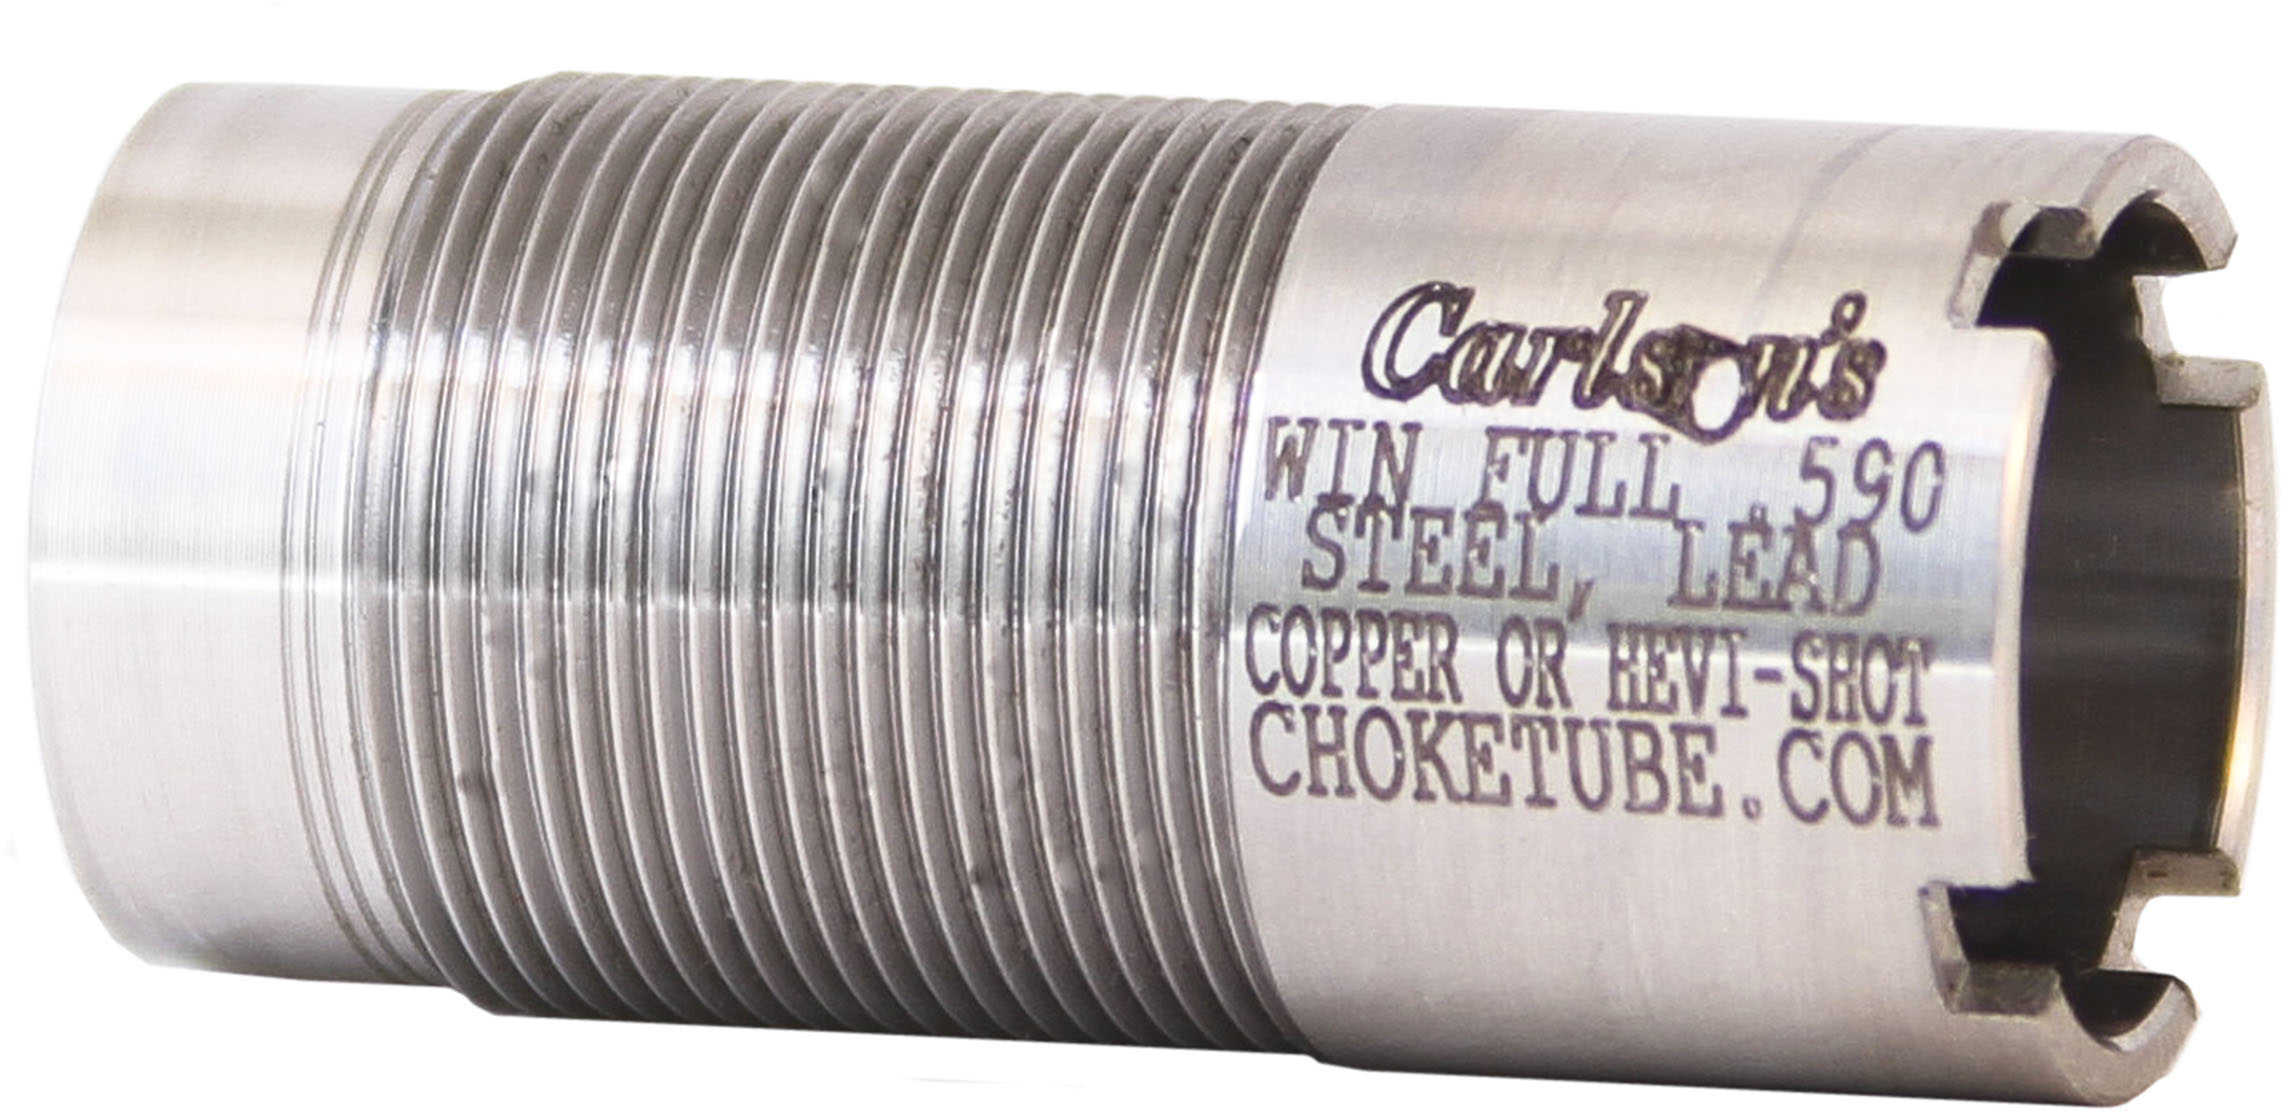 Carlsons Winchester Flush Choke Tube 20 Gauge, Full Md: 50104